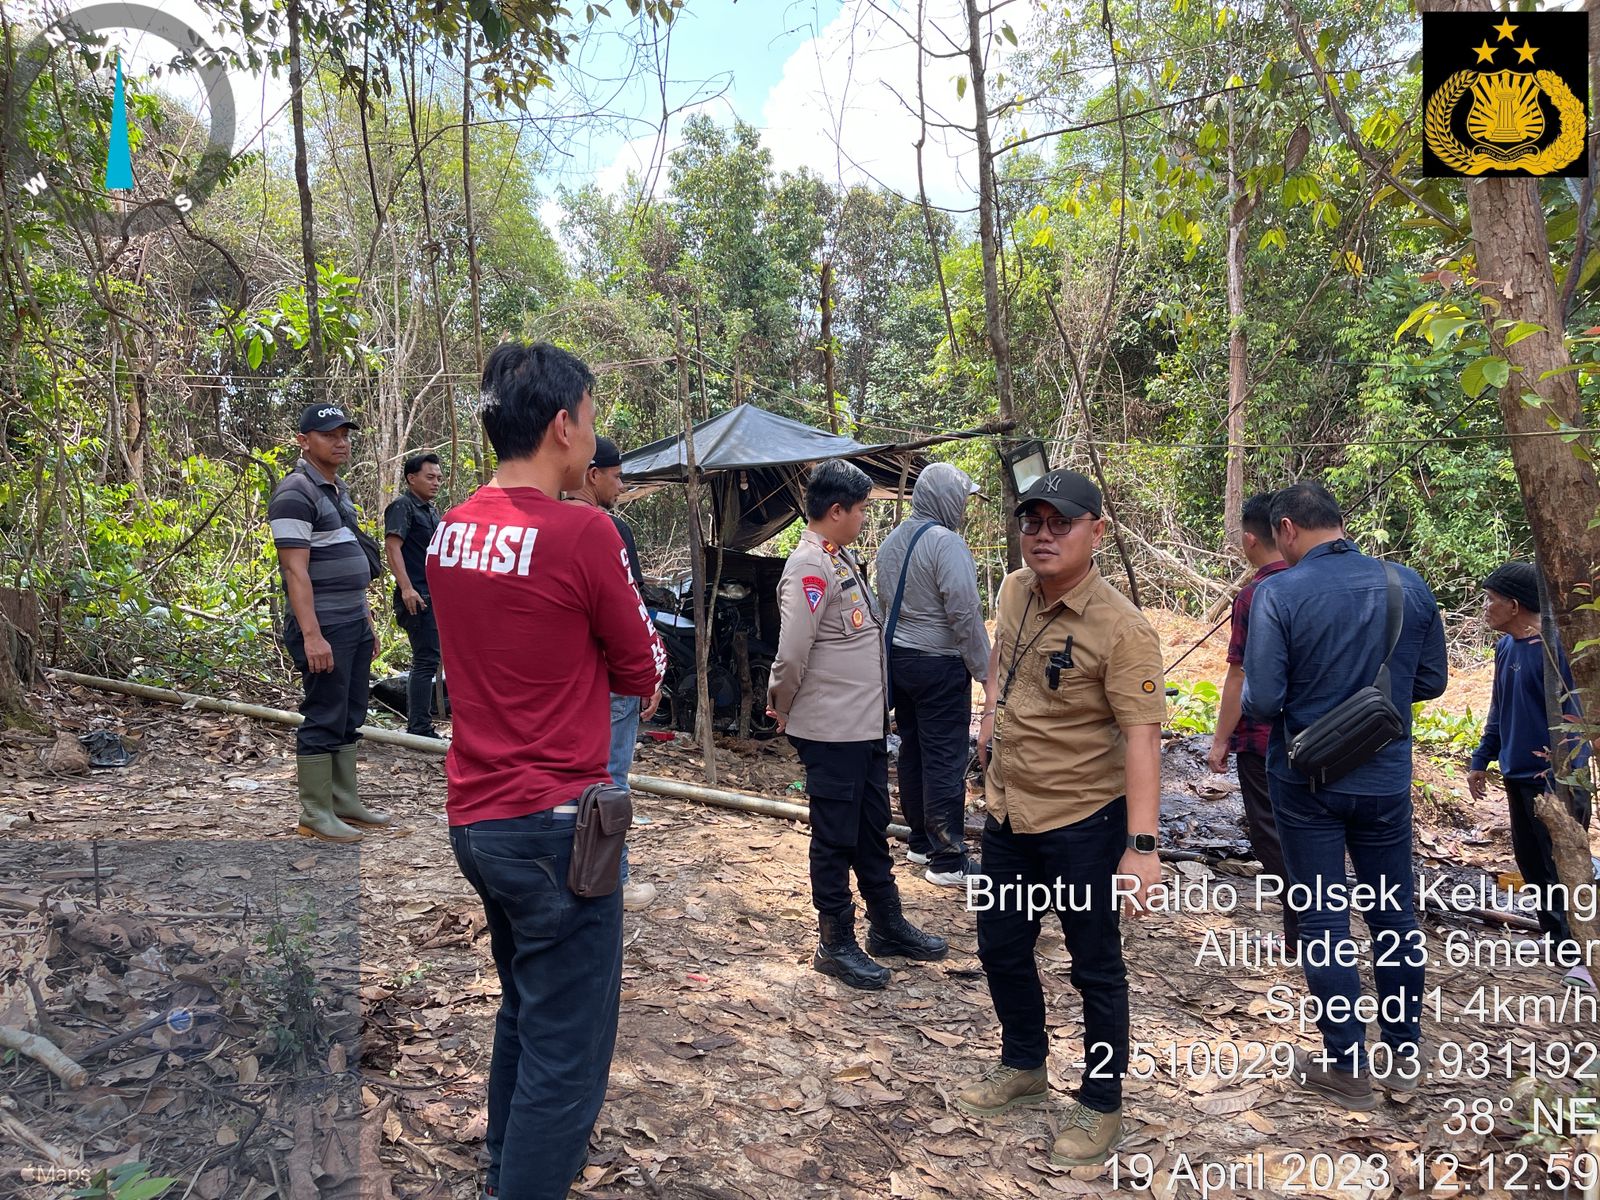 Gagal Ikut Lebaran, 2 Pelaku Ilegal Drilling di Muba Ditangkap Polda Sumsel dan Satreskrim Muba